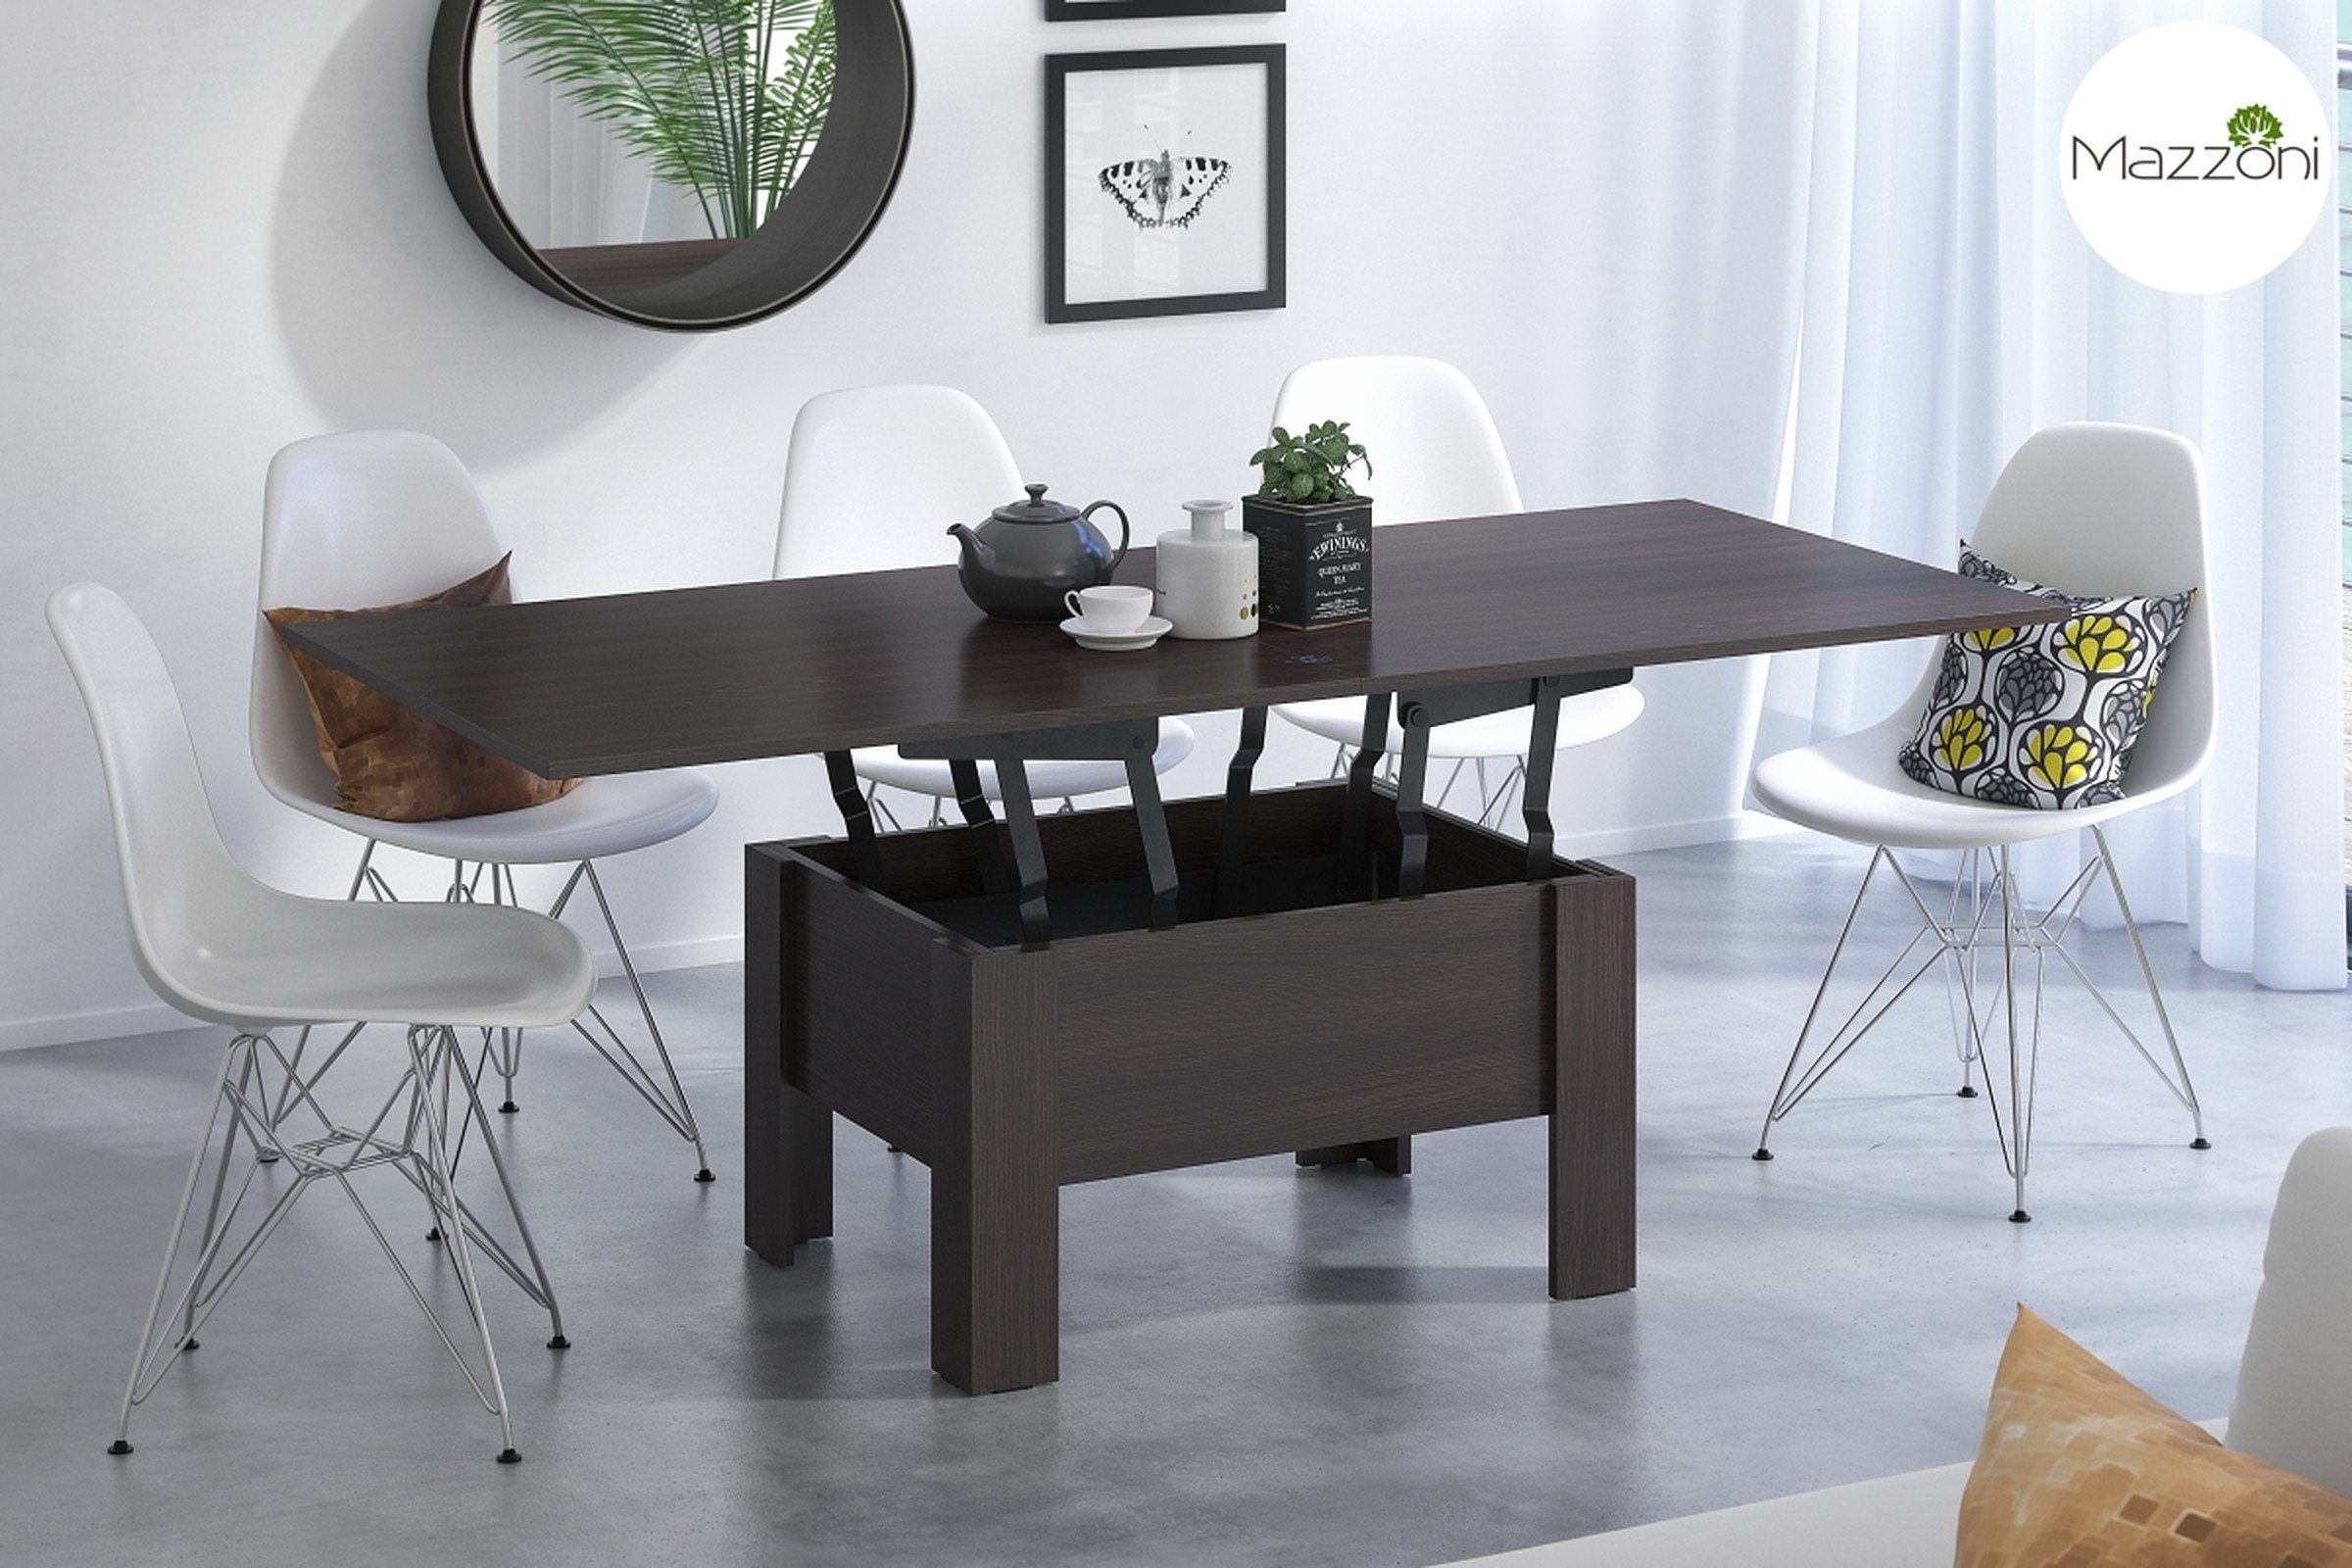 Wenge Couchtisch Tisch aufklappbar designimpex Couchtisch Walnuss Oslo Design Esstisch höhenverstellbar